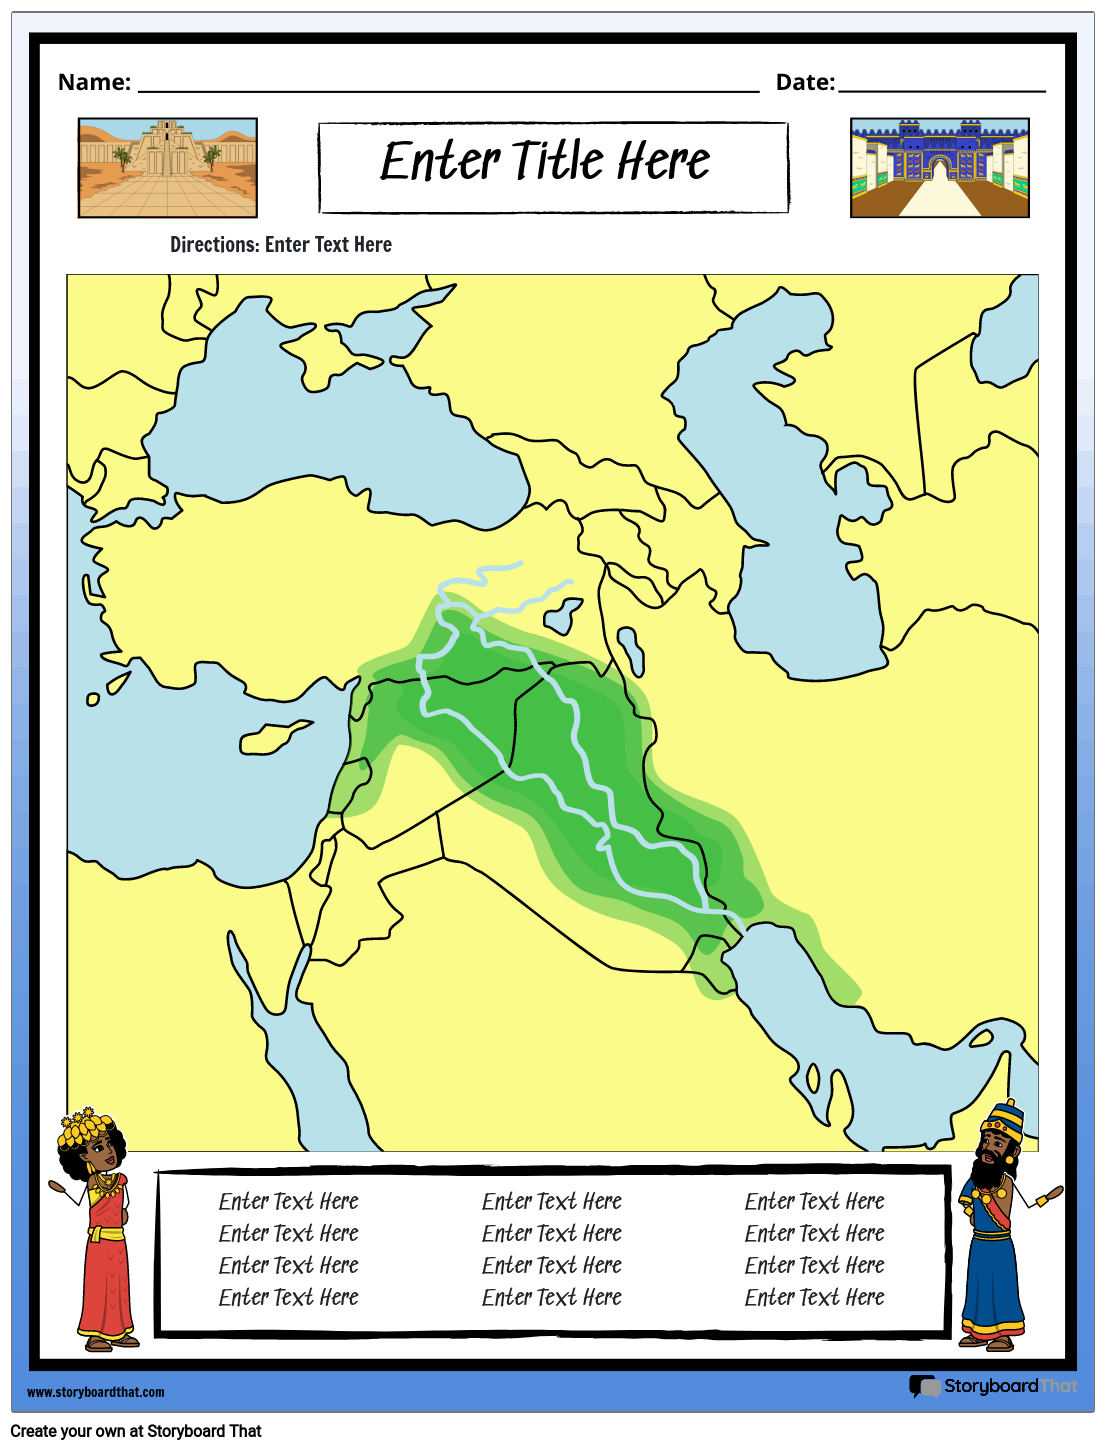 Карта Месопотамии